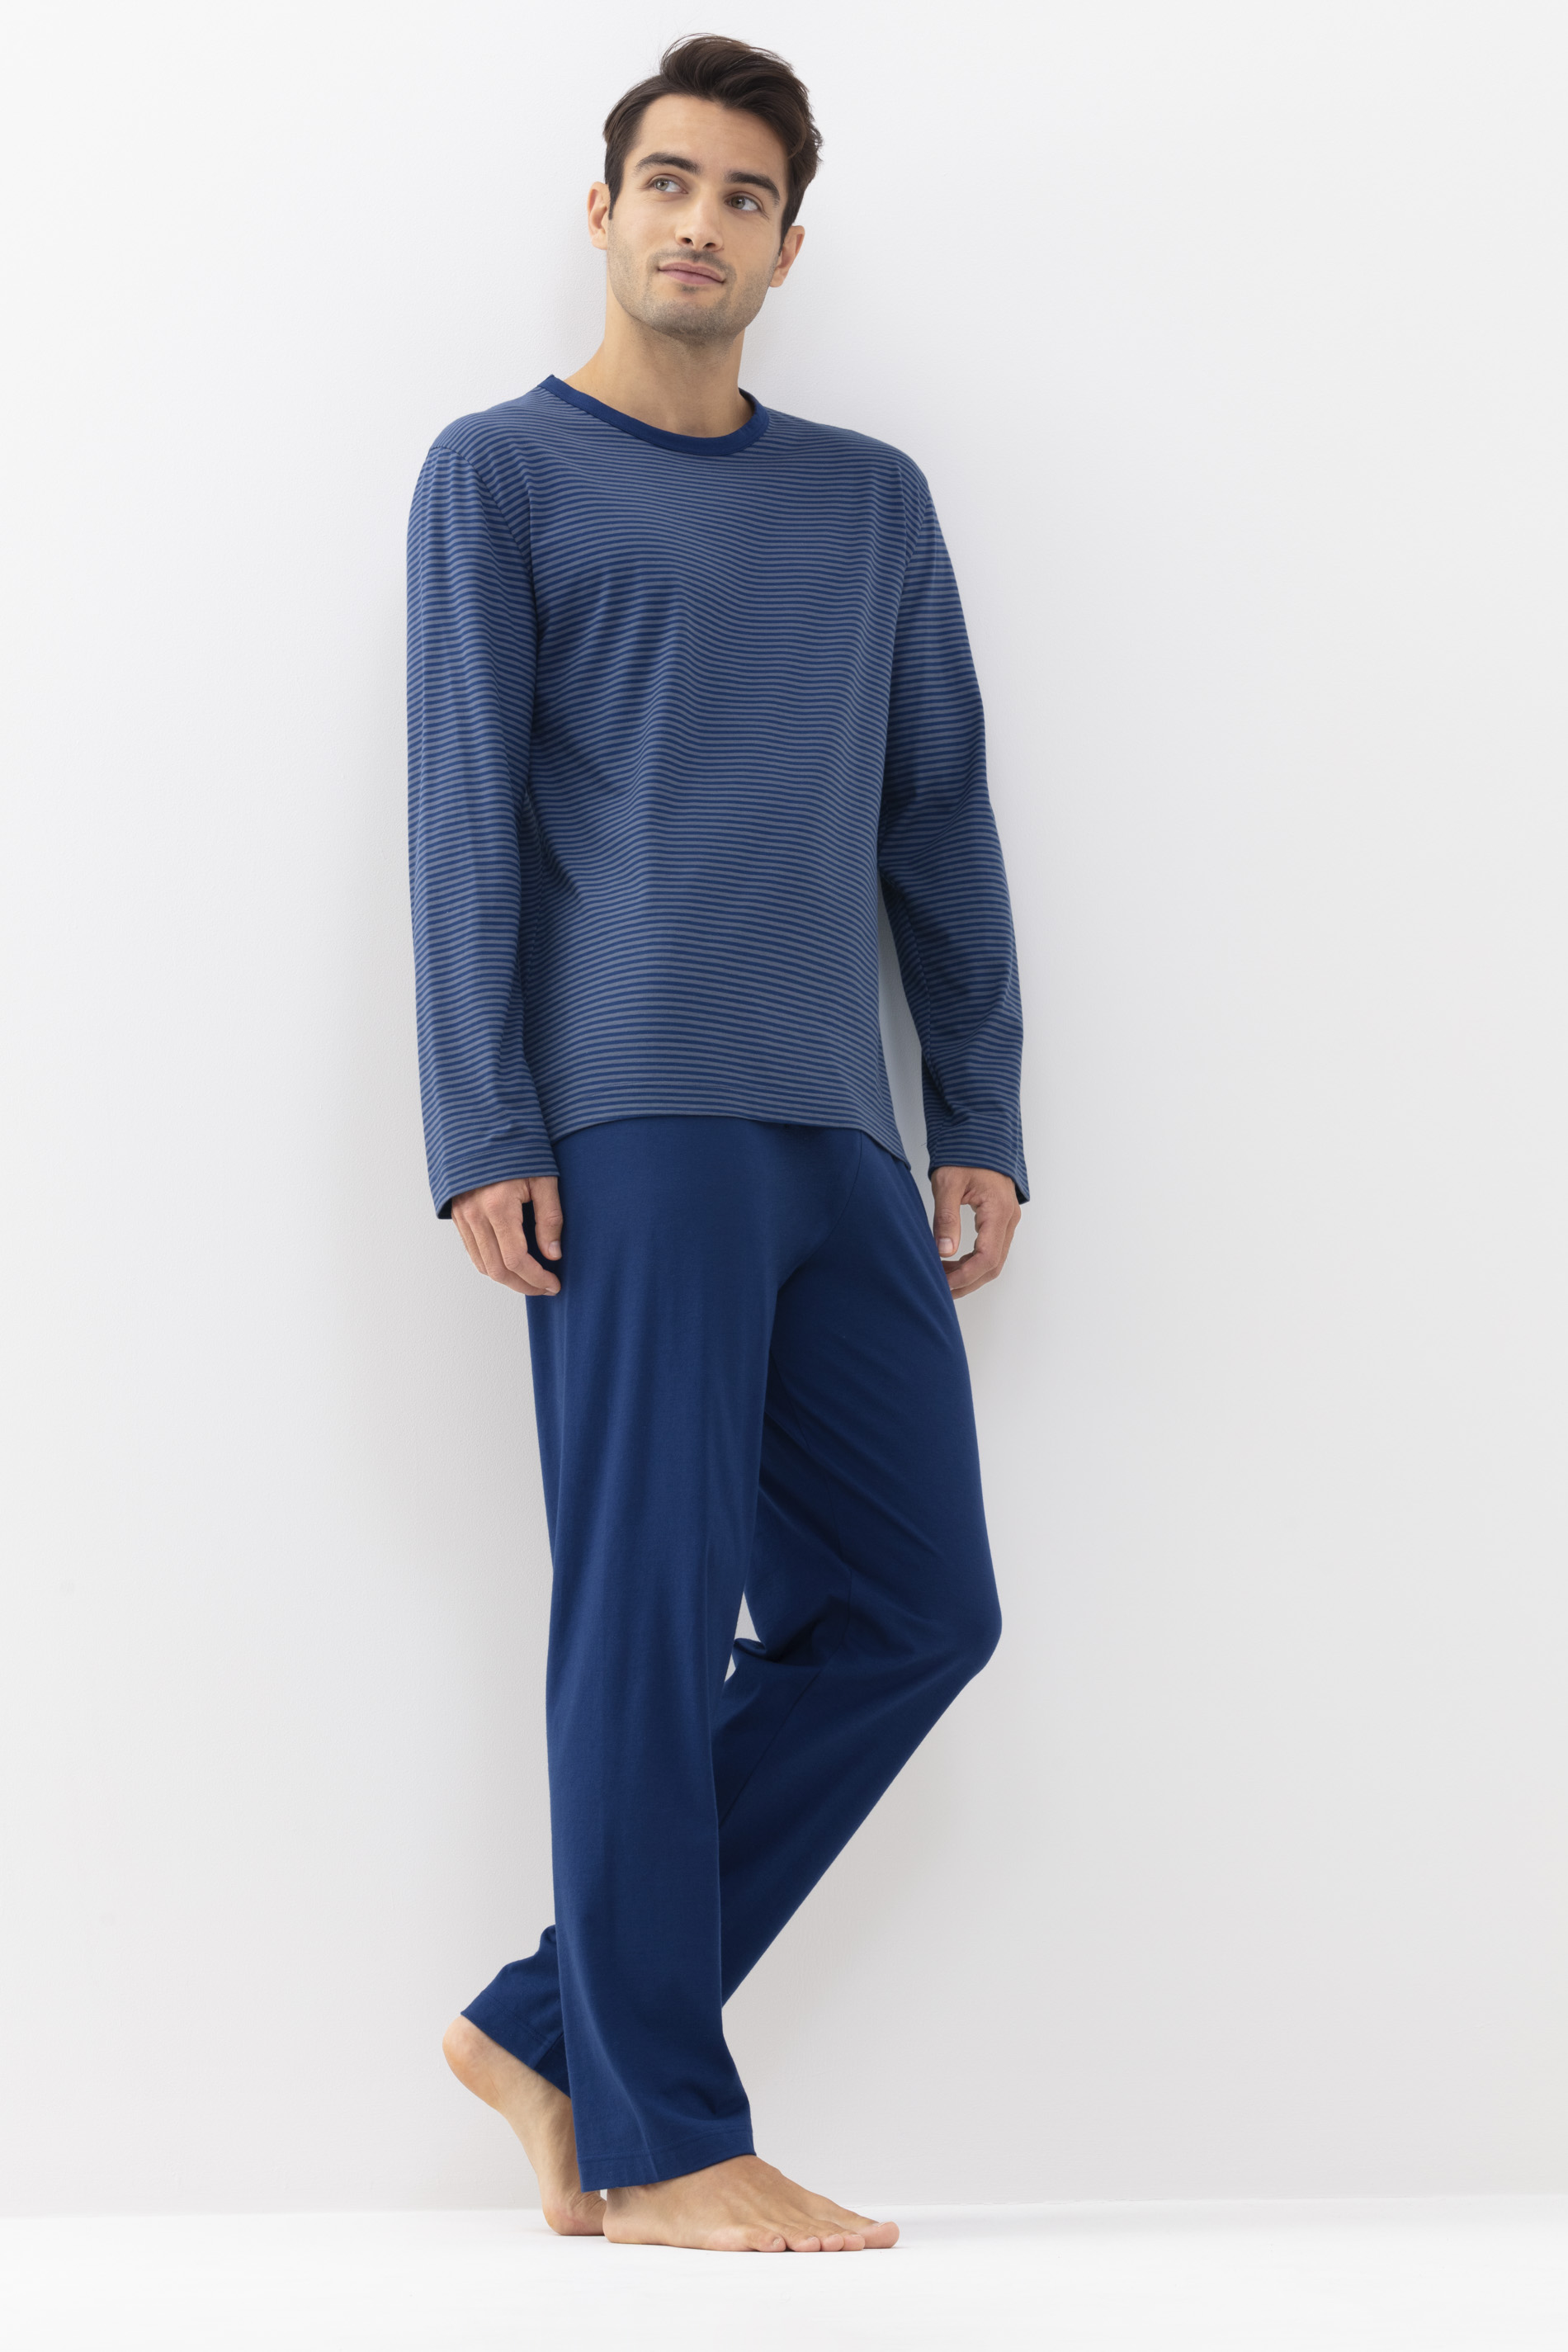 Pyjamas Neptune Serie Cardwell Festlegen | mey®